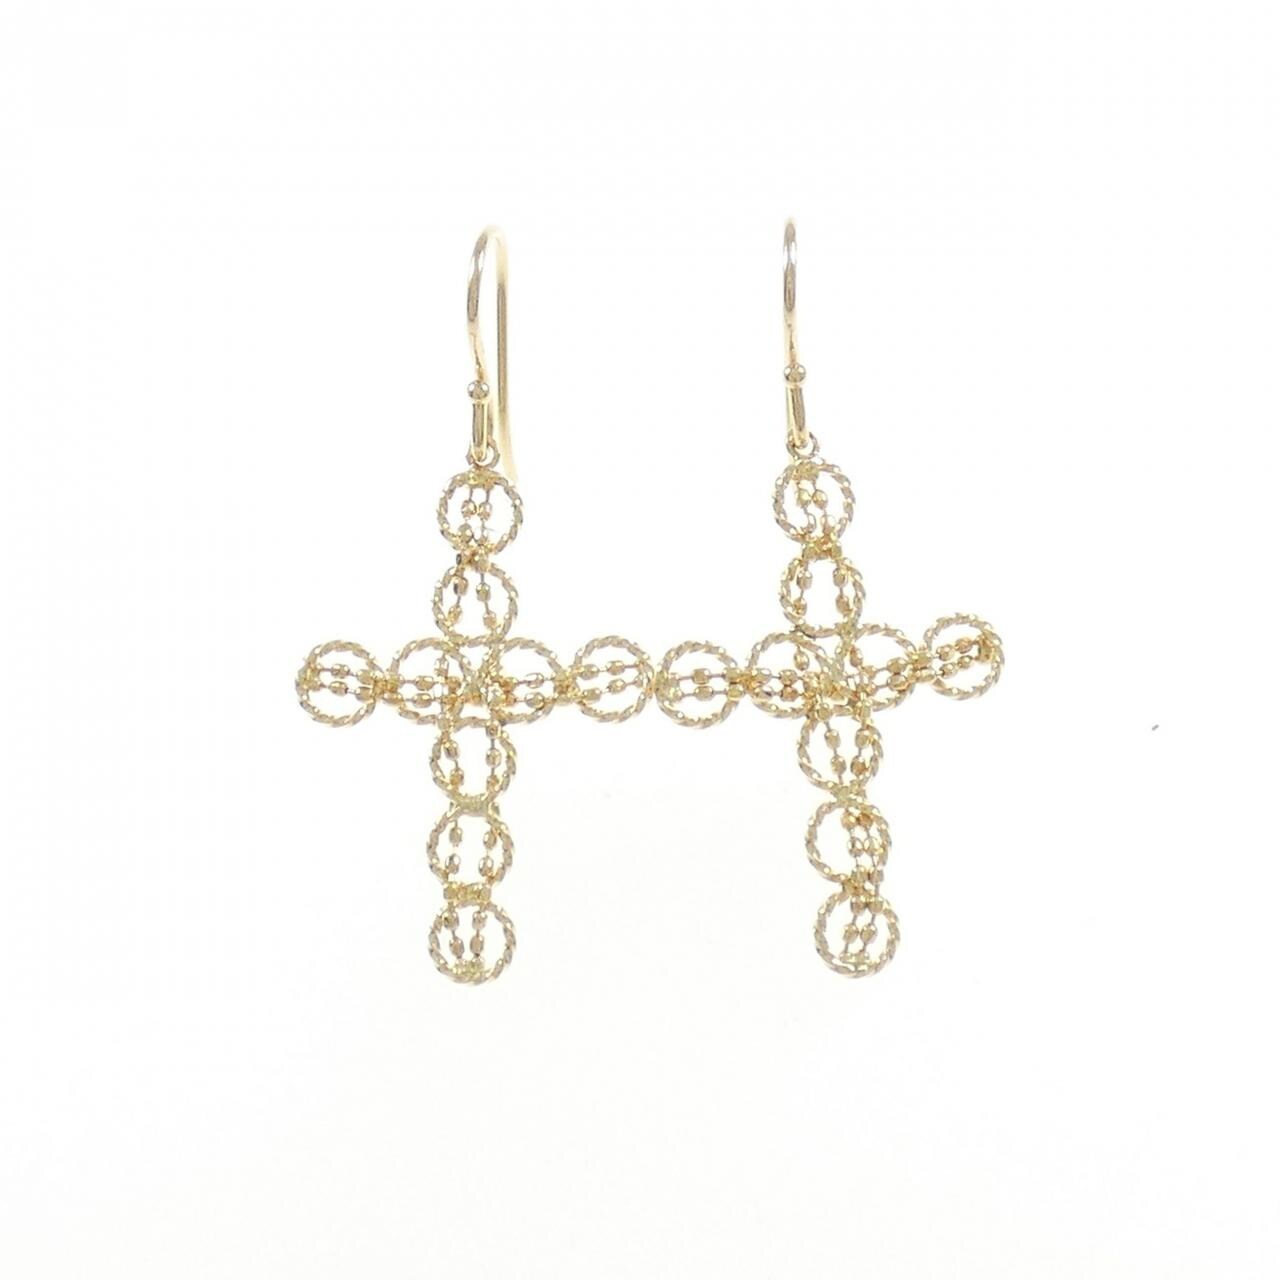 K18YG cross earrings